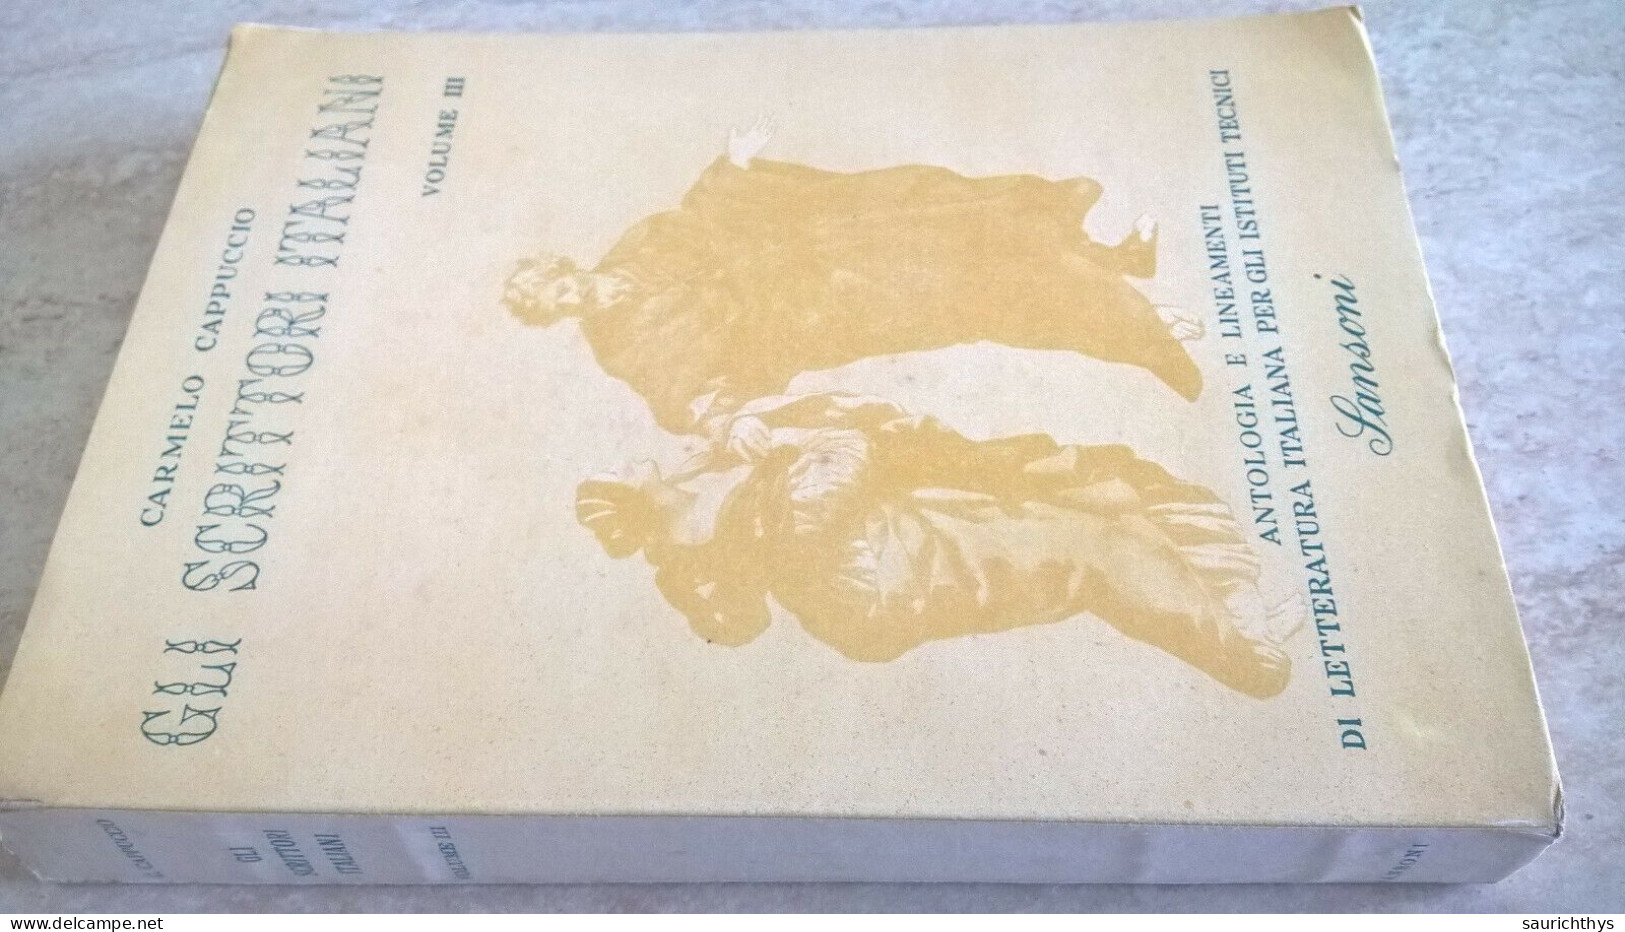 Carmelo Cappuccio Gli Scrittori Italiani Volume III Il Seicento E Il Settecento 1957 Antologia Di Letteratura Sansoni - Teenagers